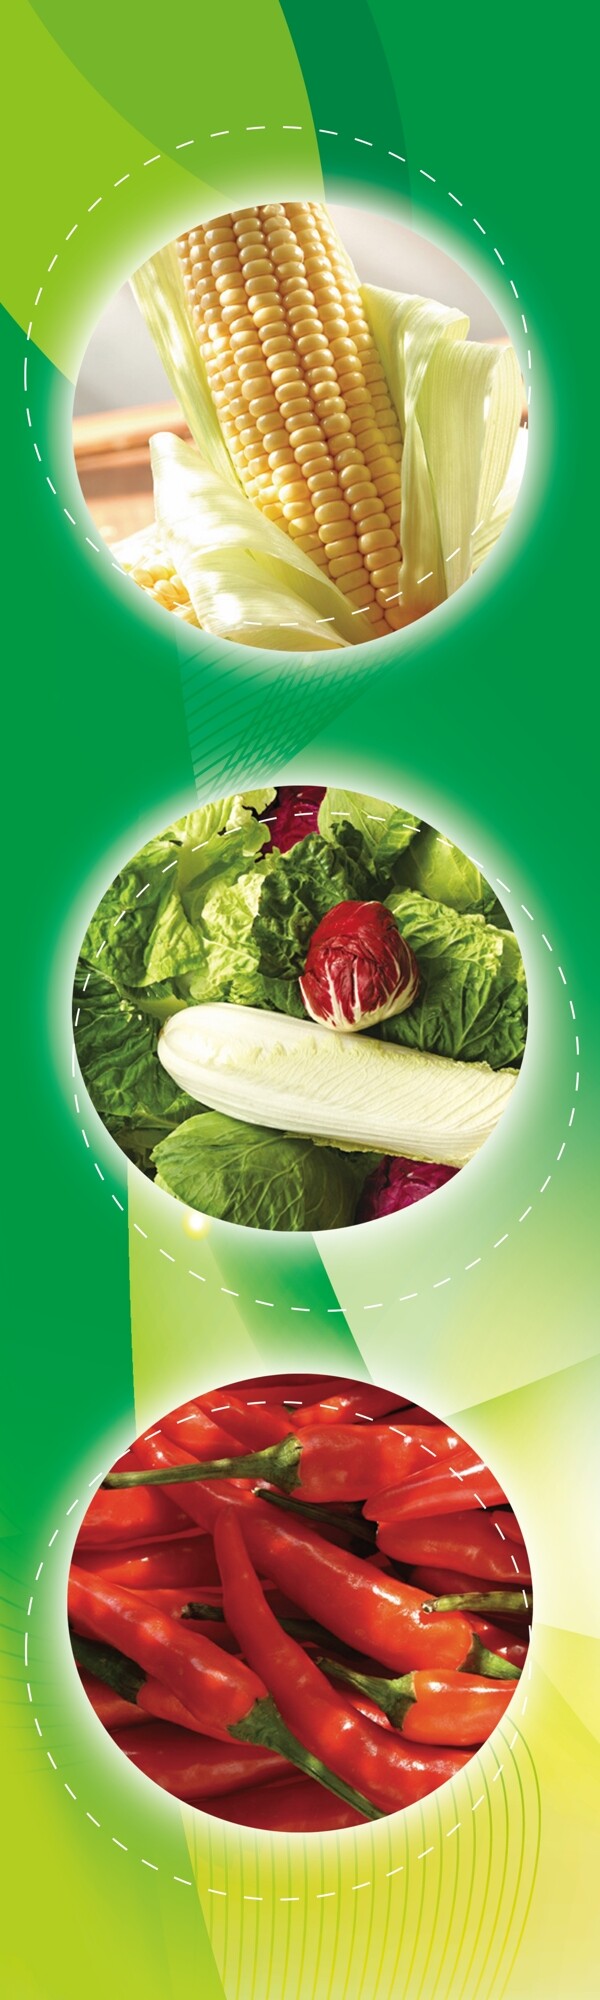 生鲜超市蔬菜图片